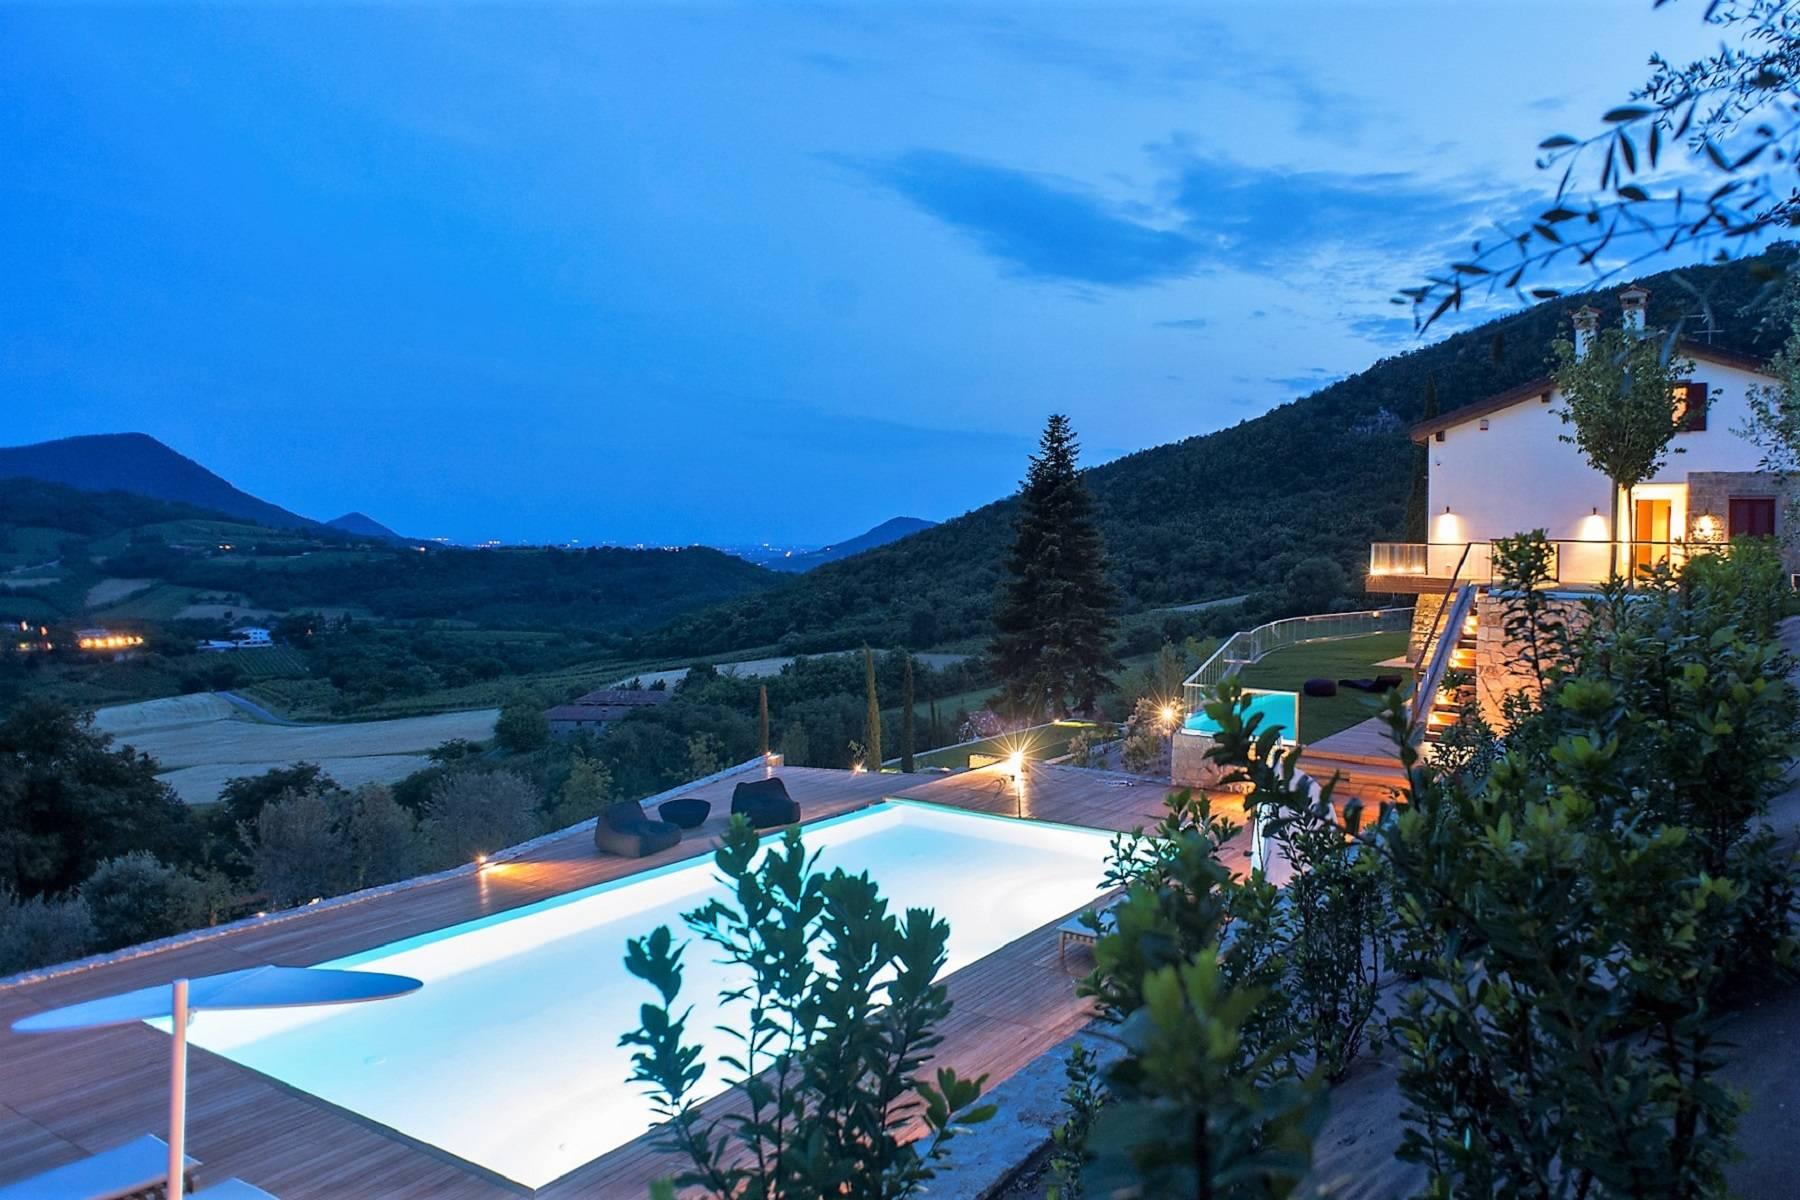 Villa moderne dans les collines avec piscine, héliport, centre équestre et lodge - 1